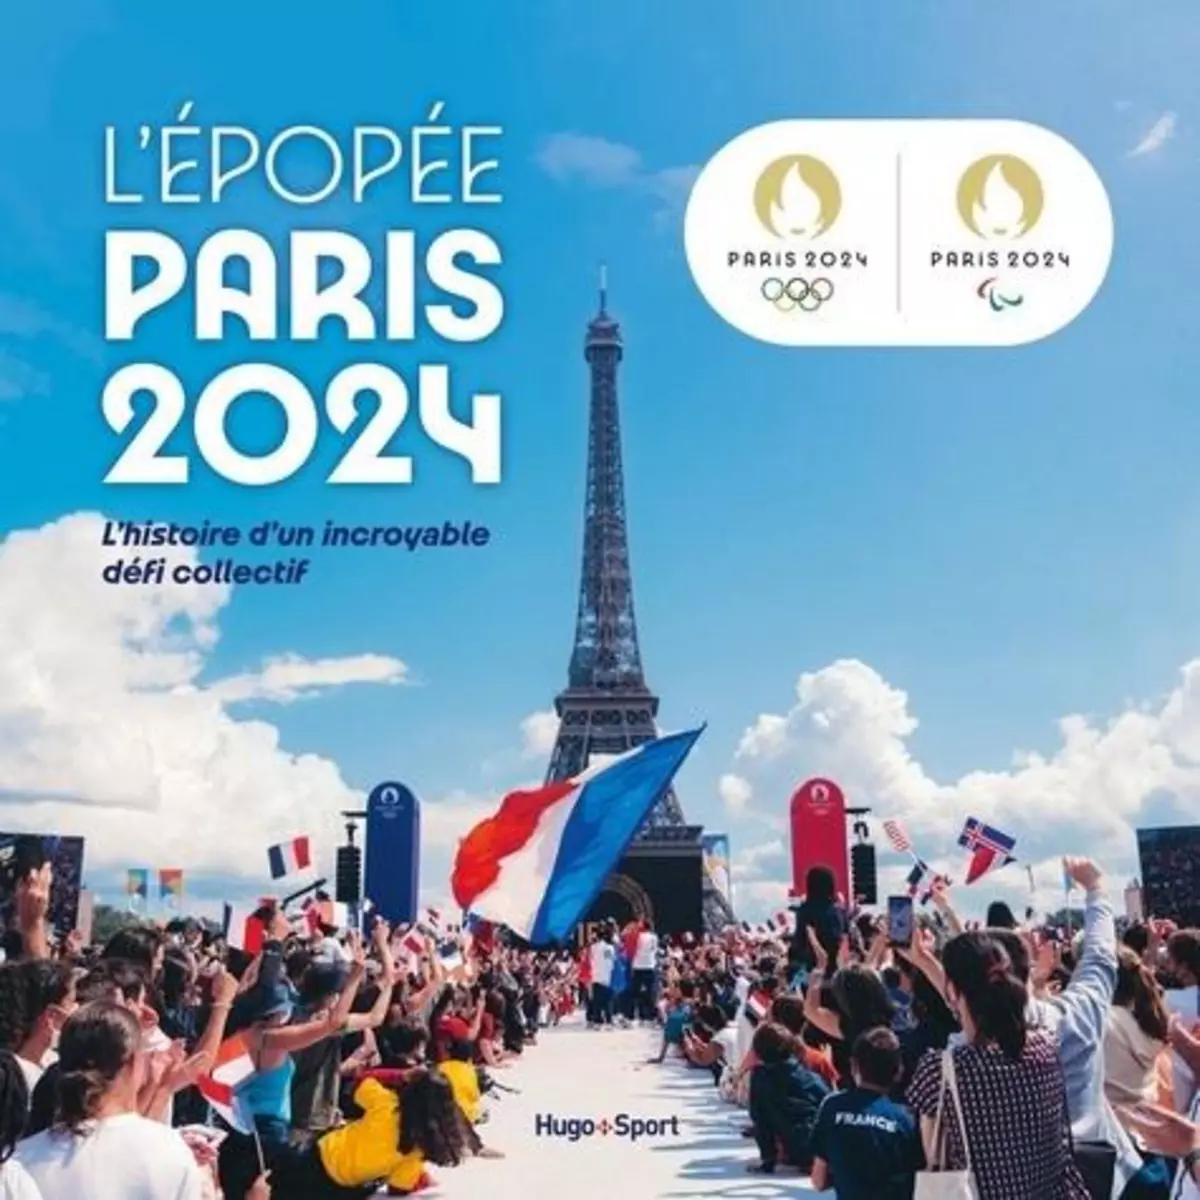  L'EPOPEE PARIS 2024. L'HISTOIRE D'UN INCROYABLE DEFI COLLECTIF, Pellicot Johann